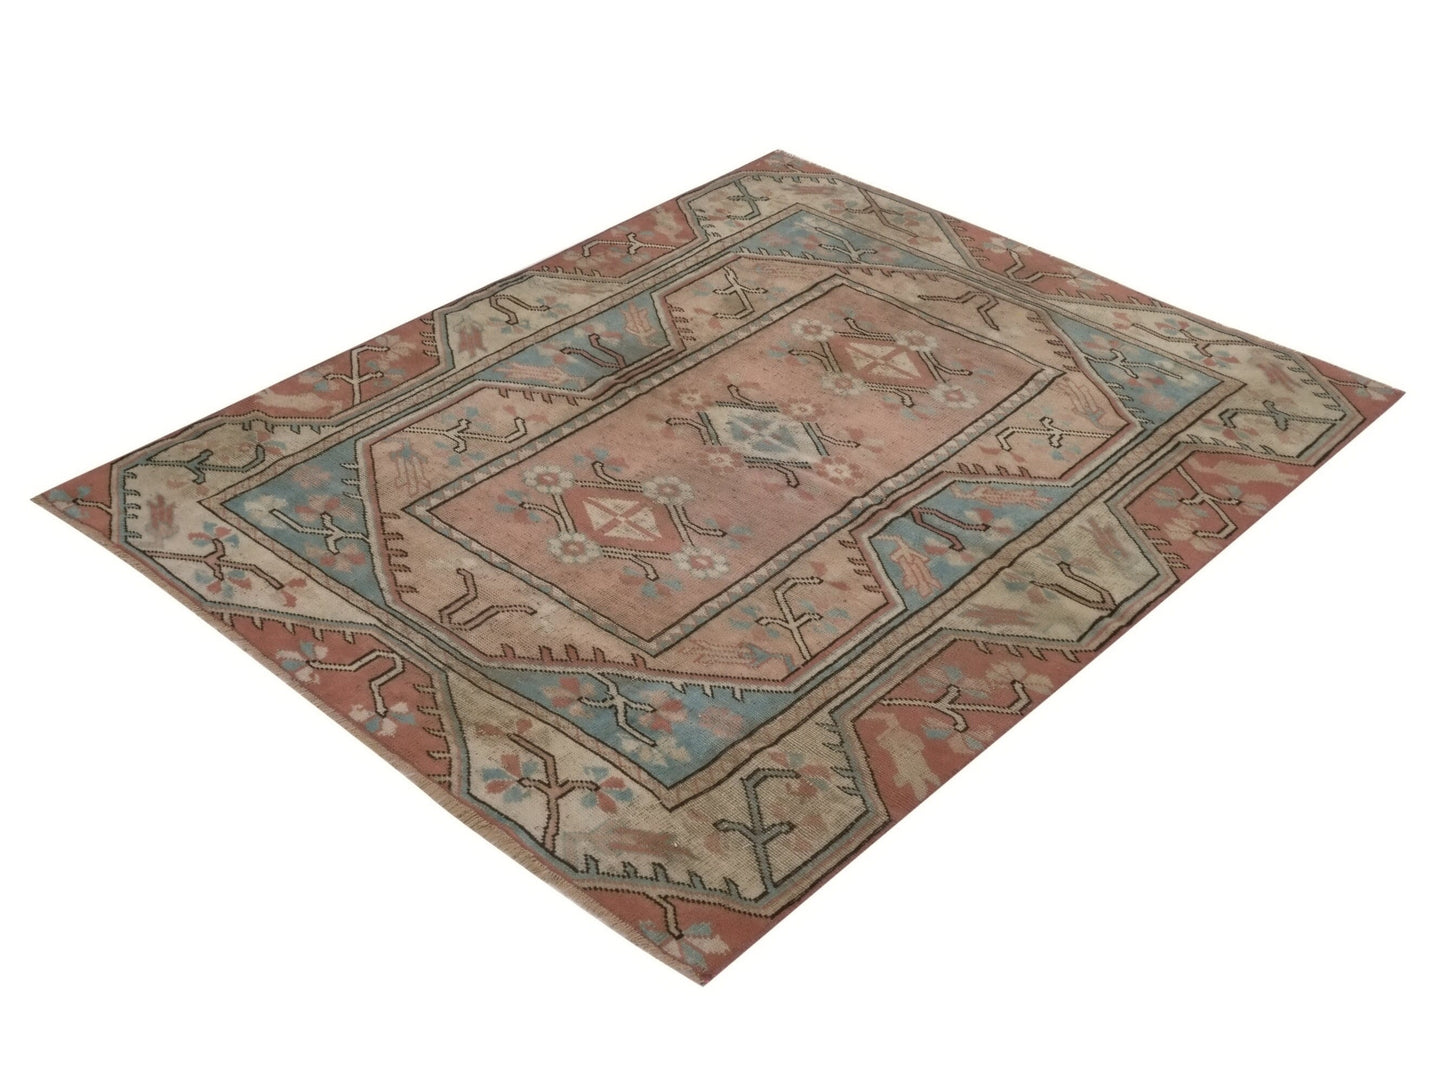 5x6 Rug, Turkish rug, Vintage rug, Oushak rug, Neutral rug, Area rug, Bedroom rug, Fine rug, Etsy rug, Old rug, Unique Turkish Rugs, 8933